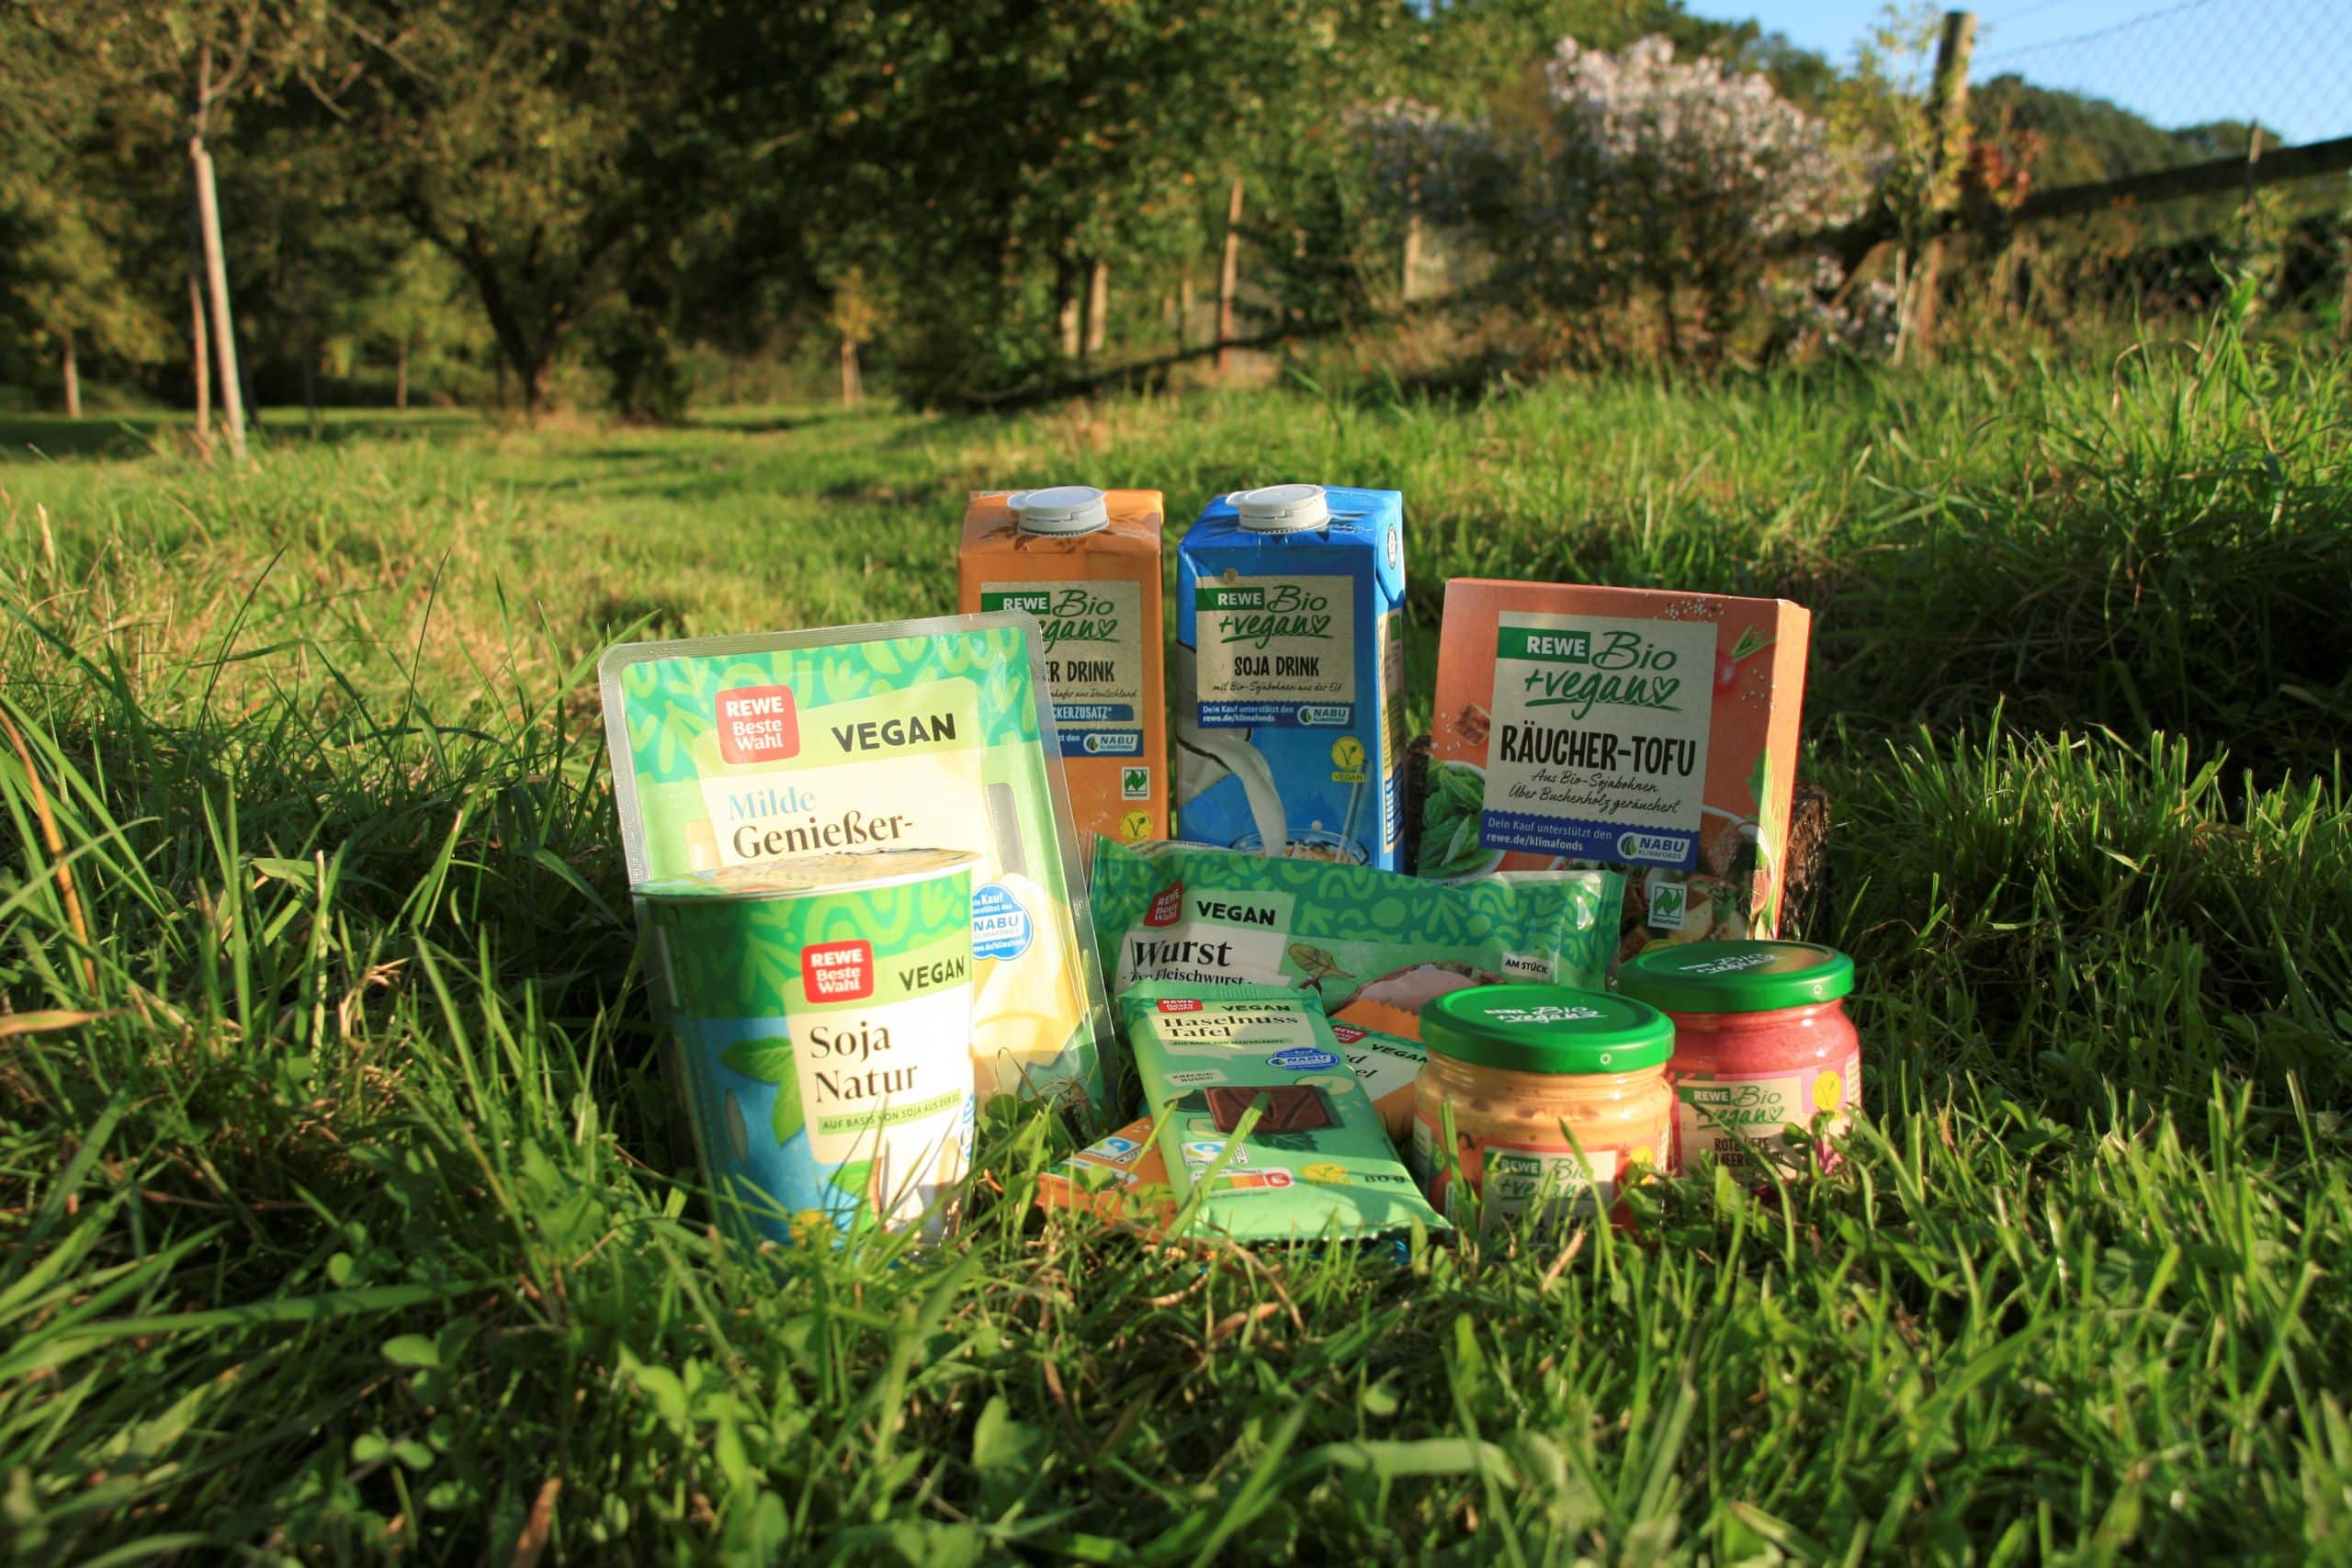 Vegane Produkte wie Soja Jogurt, Schokolade, Tofu und andere Ersatzprodukte im Gras.